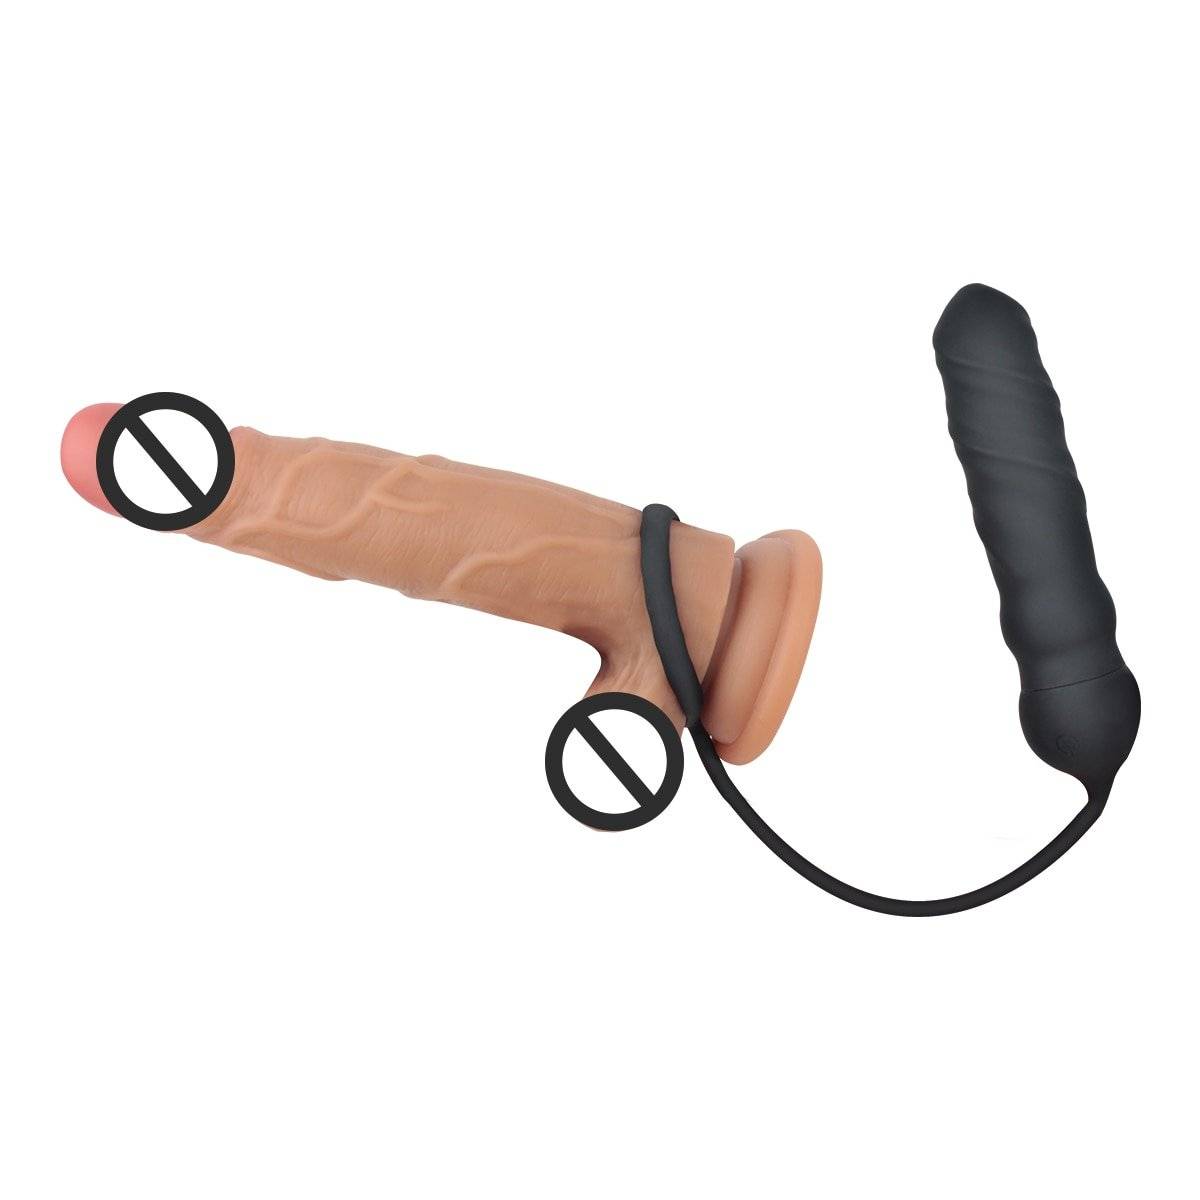 Masculino massagem de próstata vibrador pênis galo anel para homem vibratório buttplug adulto erótico brinquedos sexuais sem fio remoto bunda anal plug